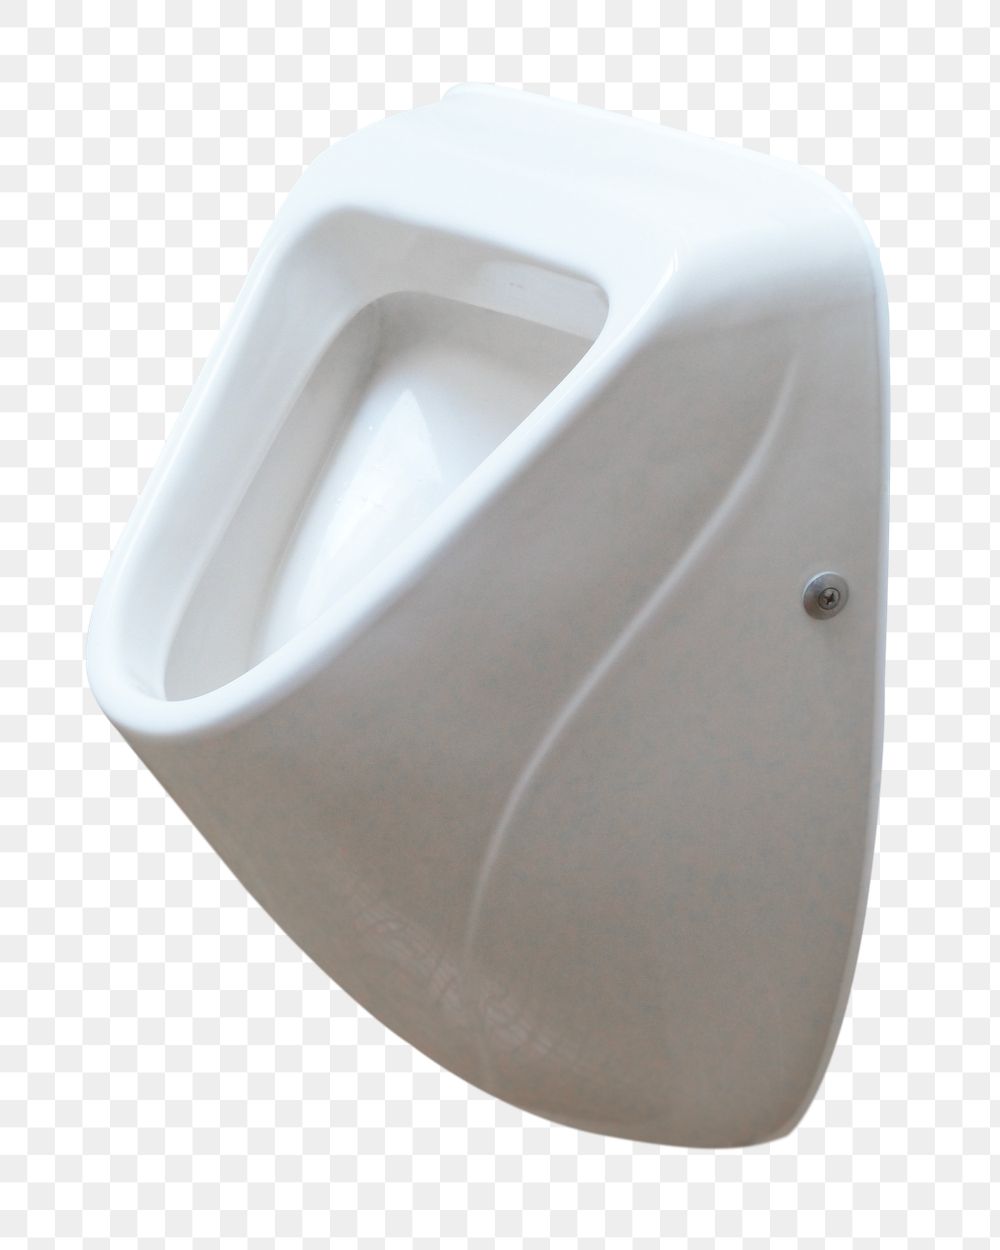 Urinal restroom png sticker, transparent background